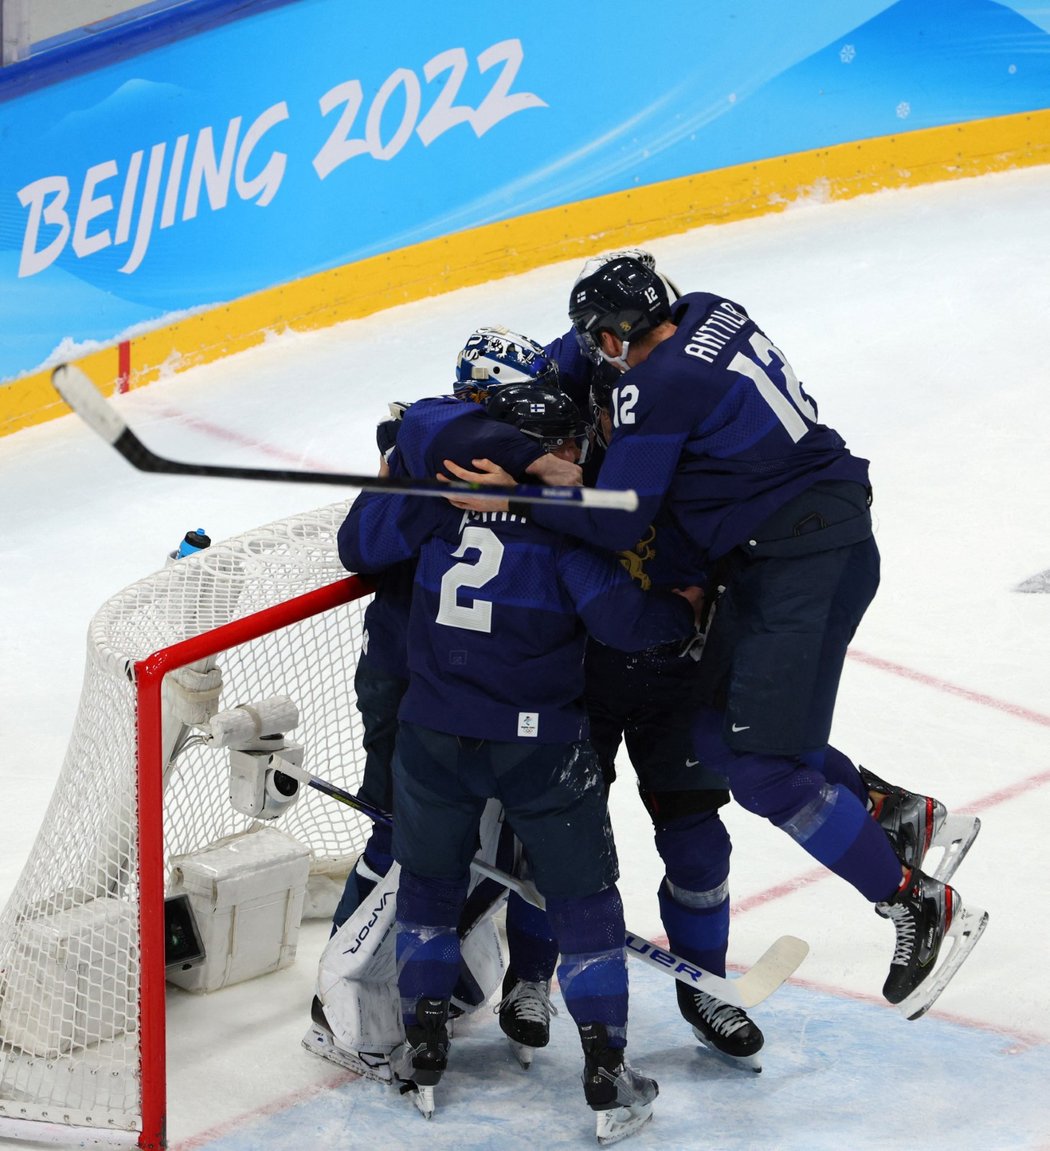 Finská radost po vítězství ve finále ZOH v Pekingu nad Ruskem 2:1